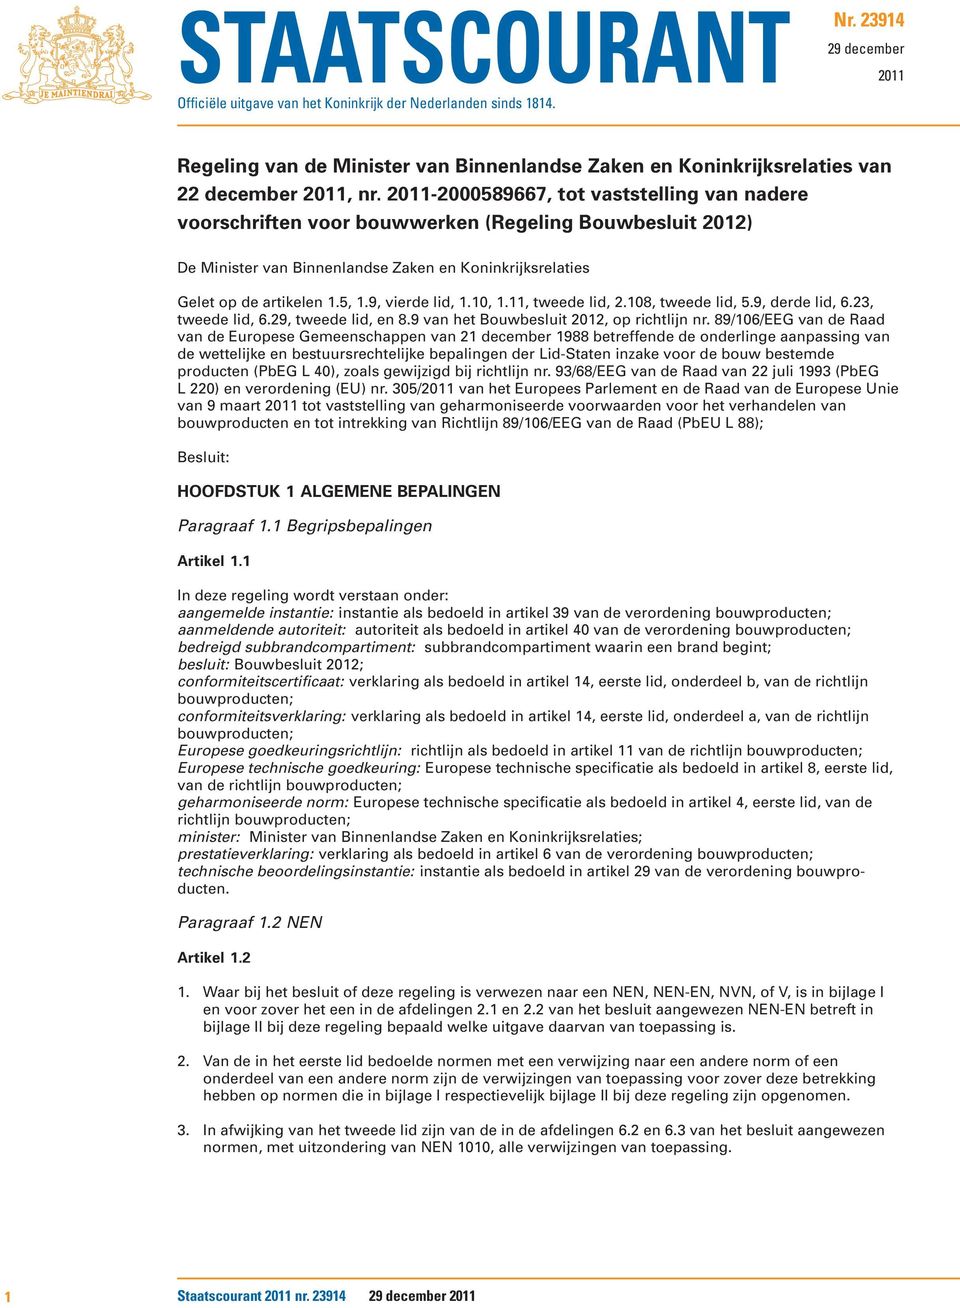 2011-2000589667, tot vaststelling van nadere voorschriften voor bouwwerken (Regeling Bouwbesluit 2012) De Minister van Binnenlandse Zaken en Koninkrijksrelaties Gelet op de artikelen 1.5, 1.